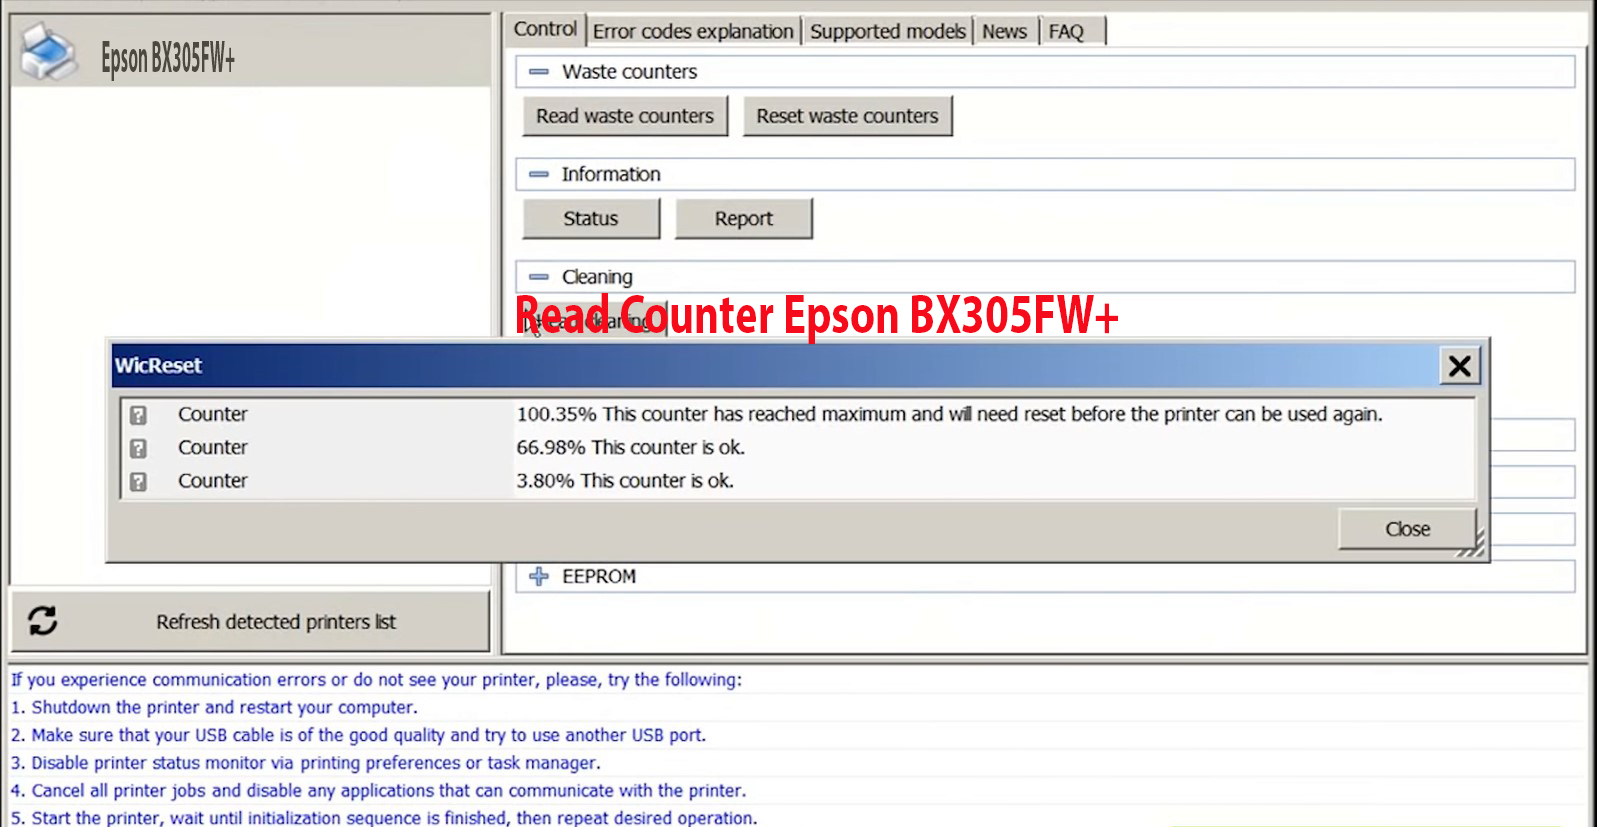 Reset Epson BX305FW+ Step 2